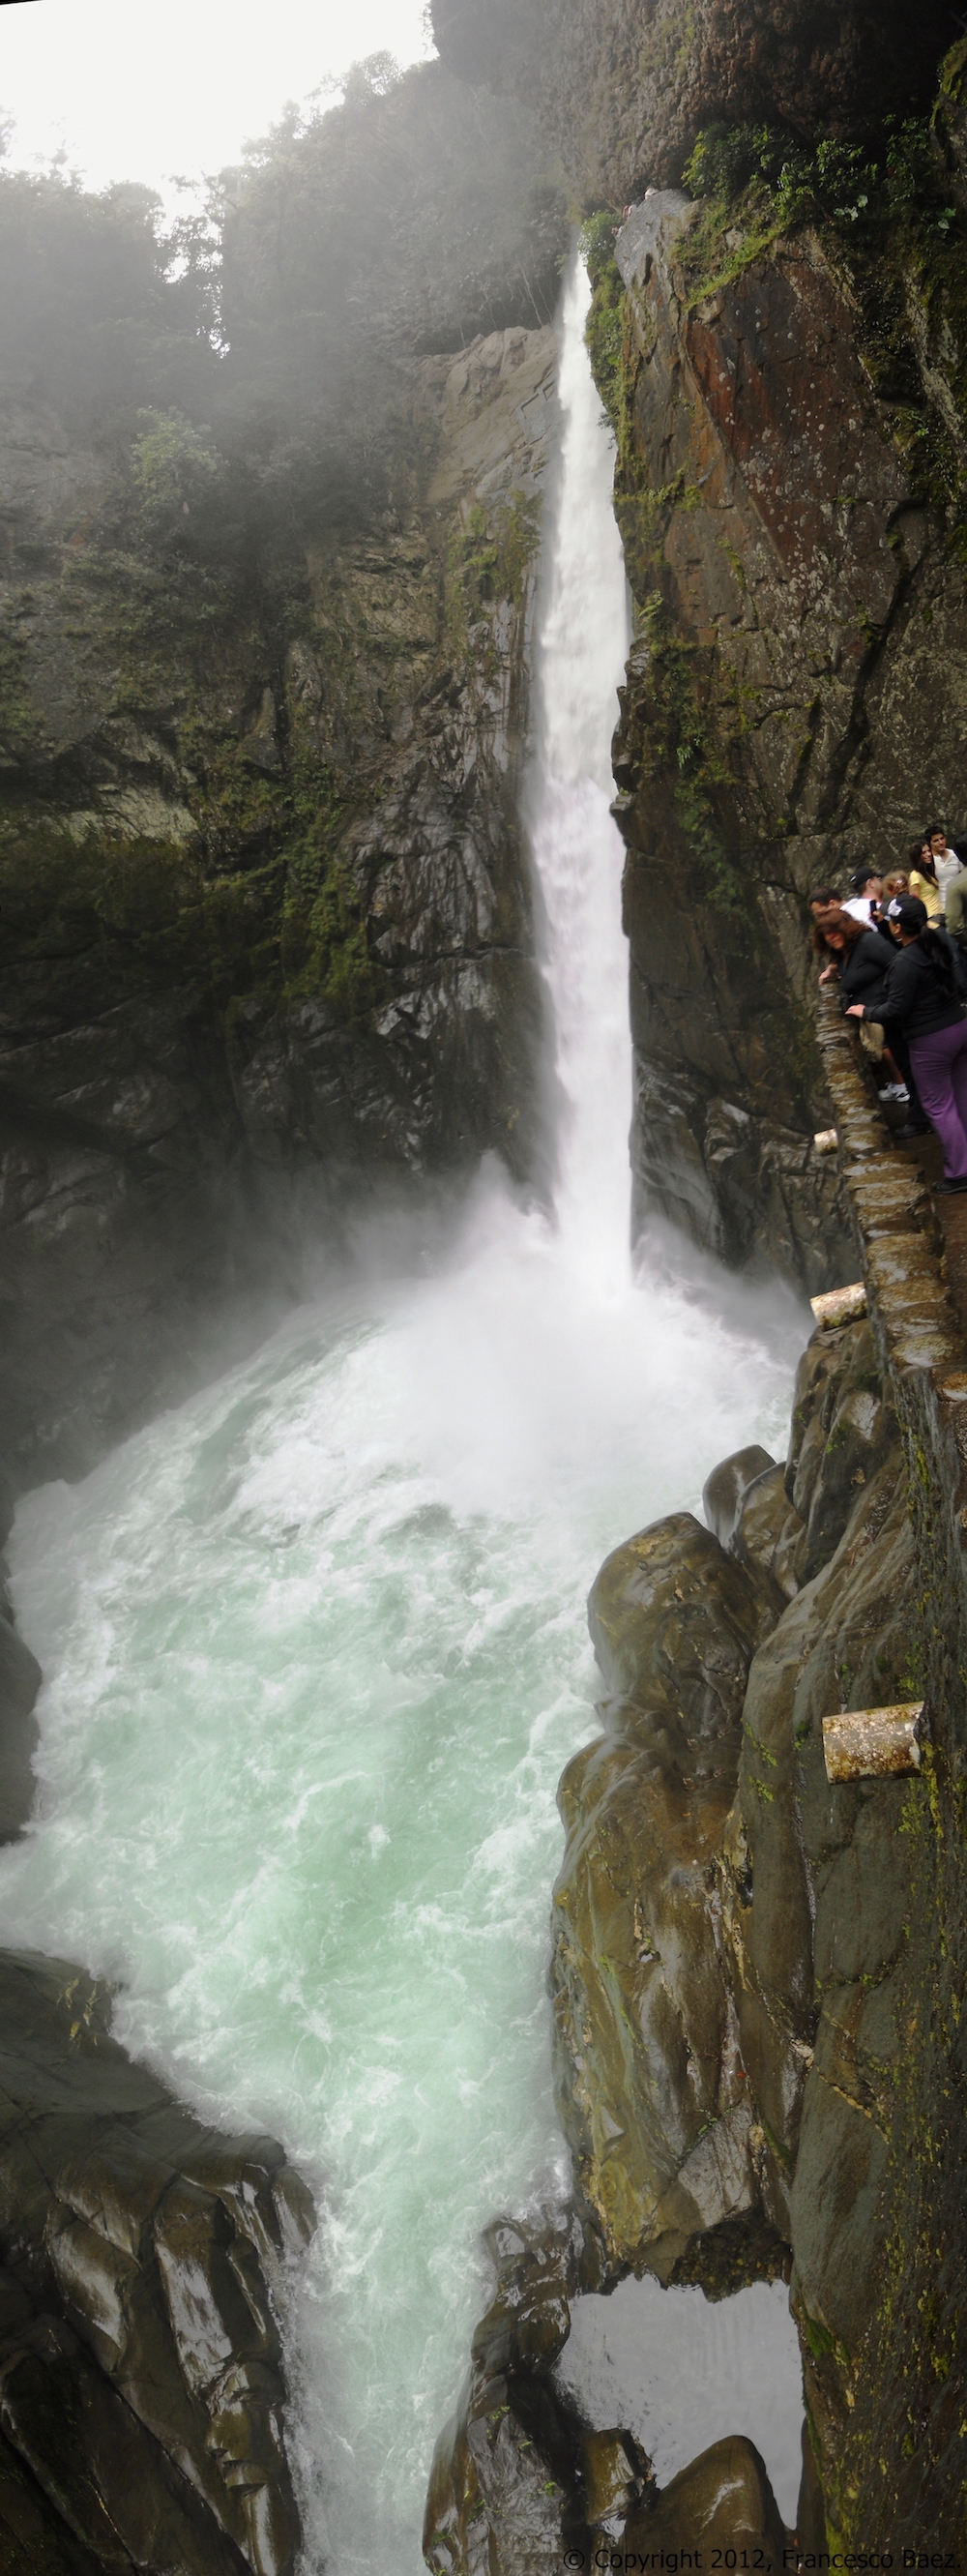 The waterfall of Rio Verde “Pailón del Diablo”. Photo credit